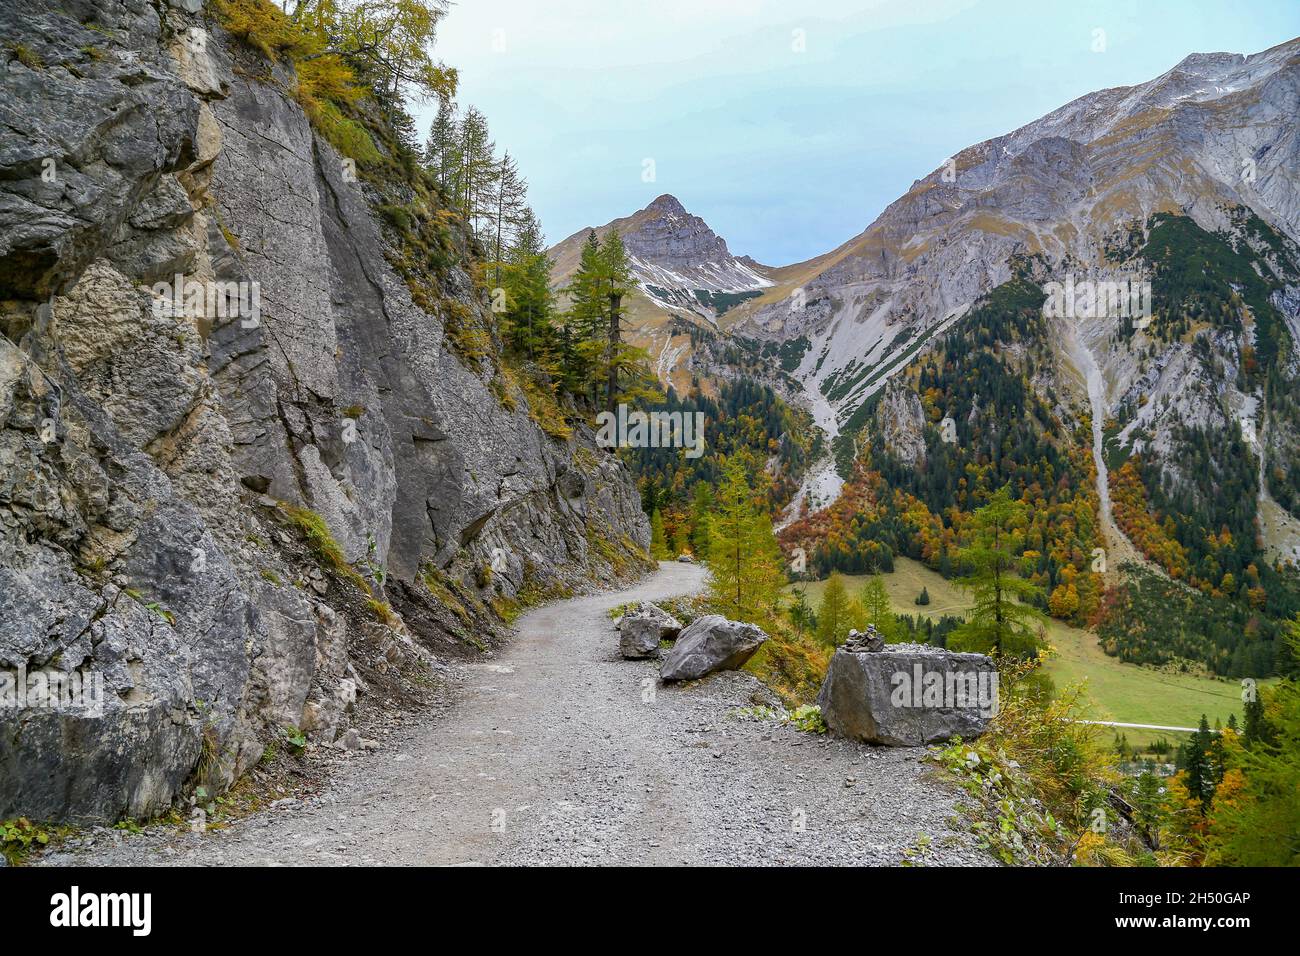 Bäume mit strahlendem Herbstlaub im hellen Sonnenlicht auf der Alp namens Grosser Ahornboden im Karwendelgebirge in Tirol in Österreich Stockfoto